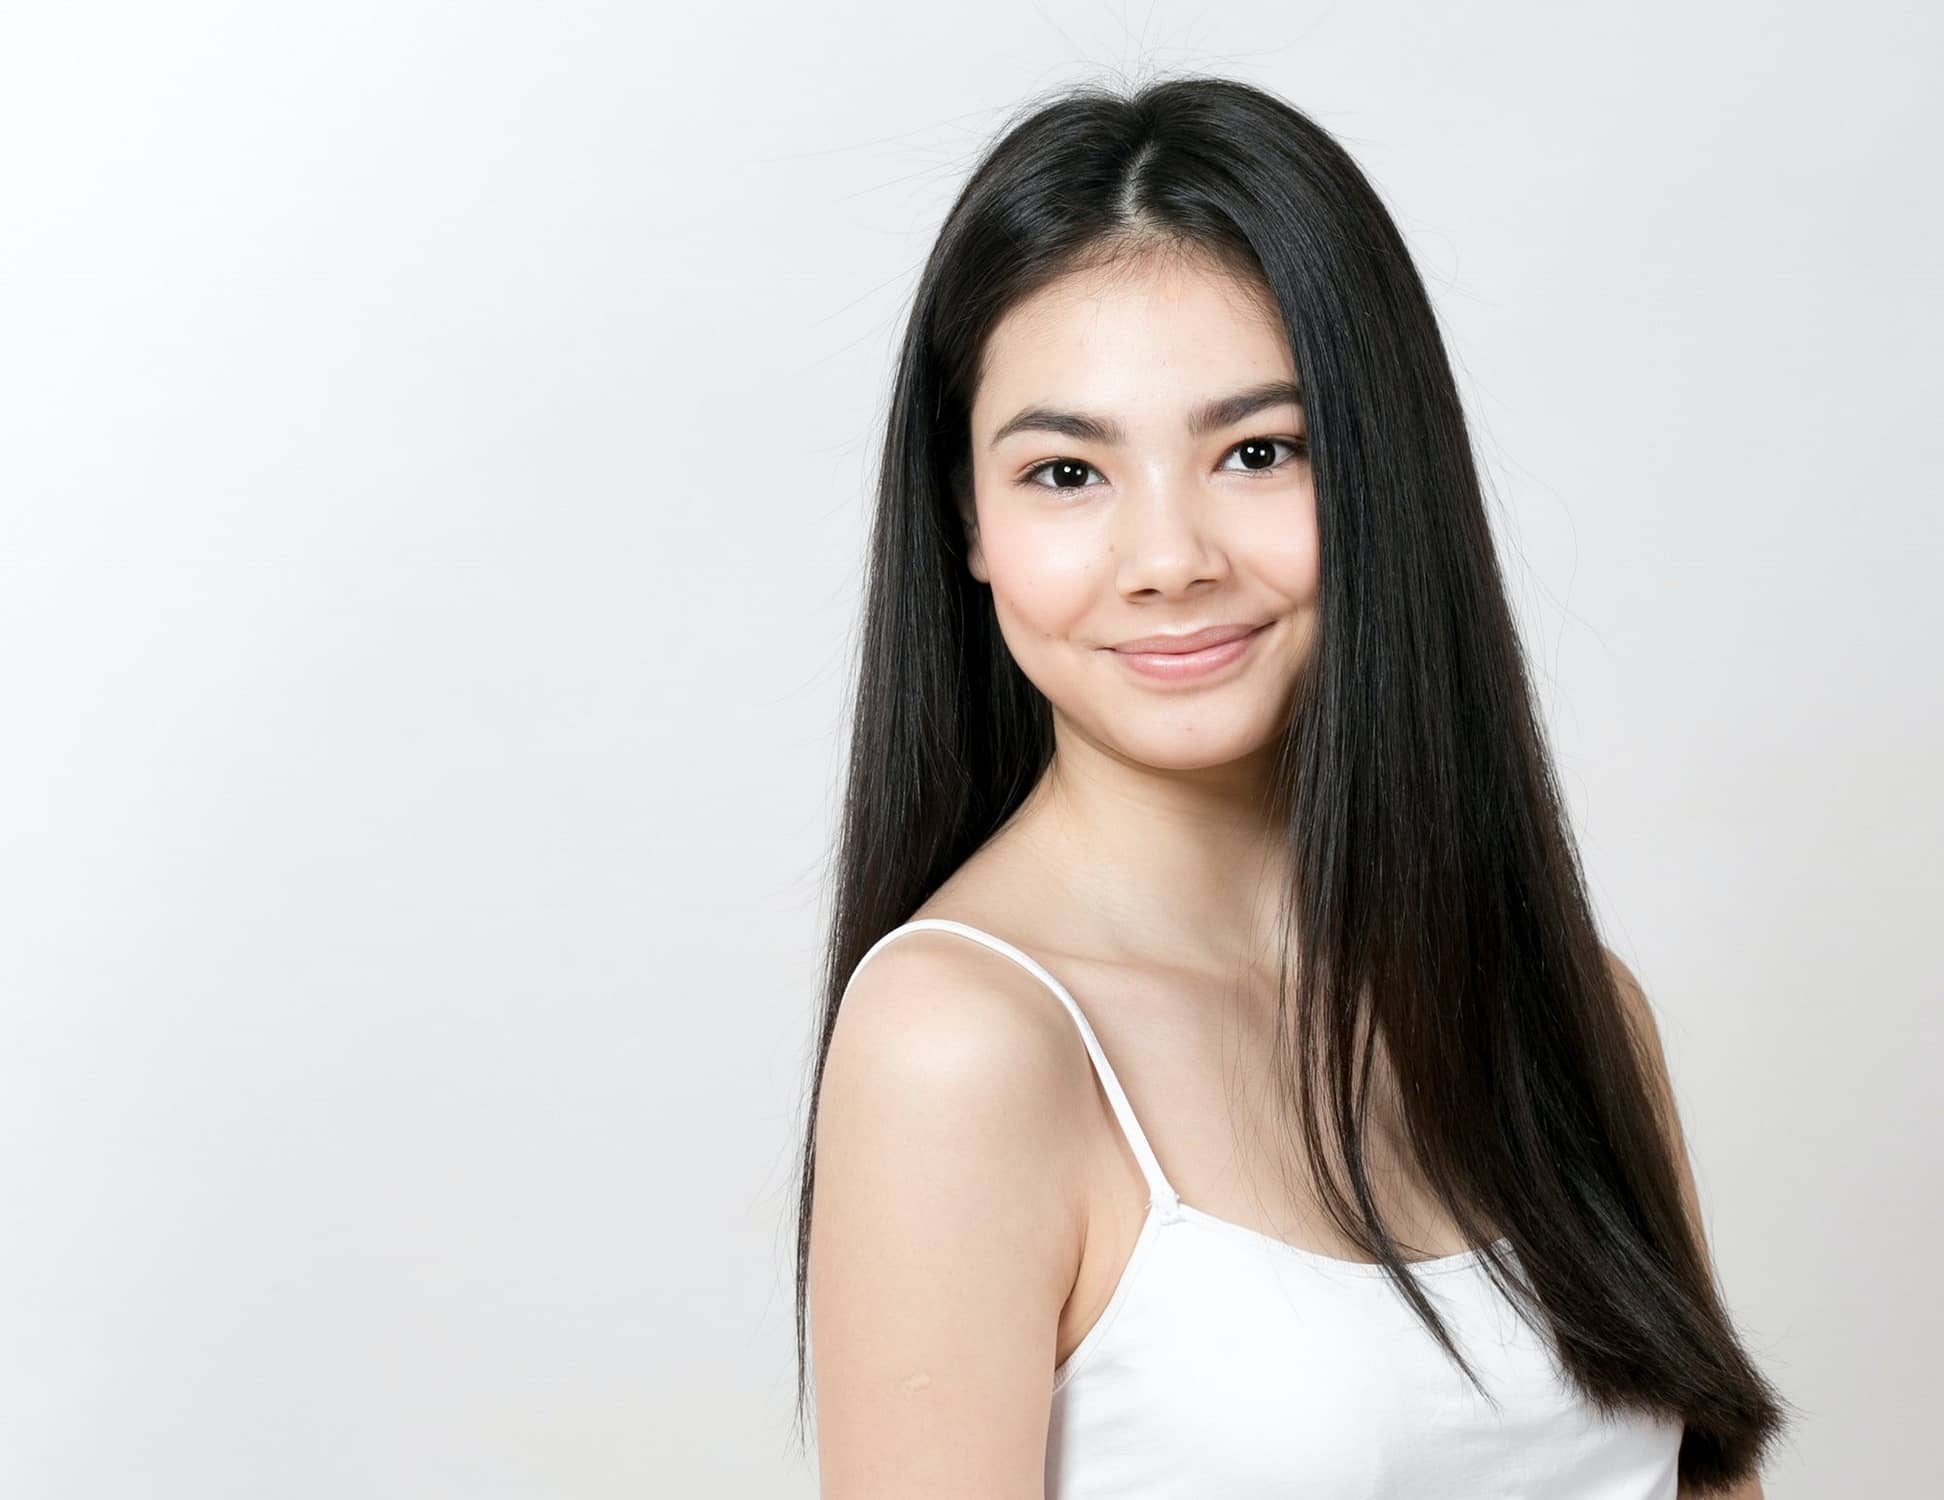 Asian woman girl beauty portrait